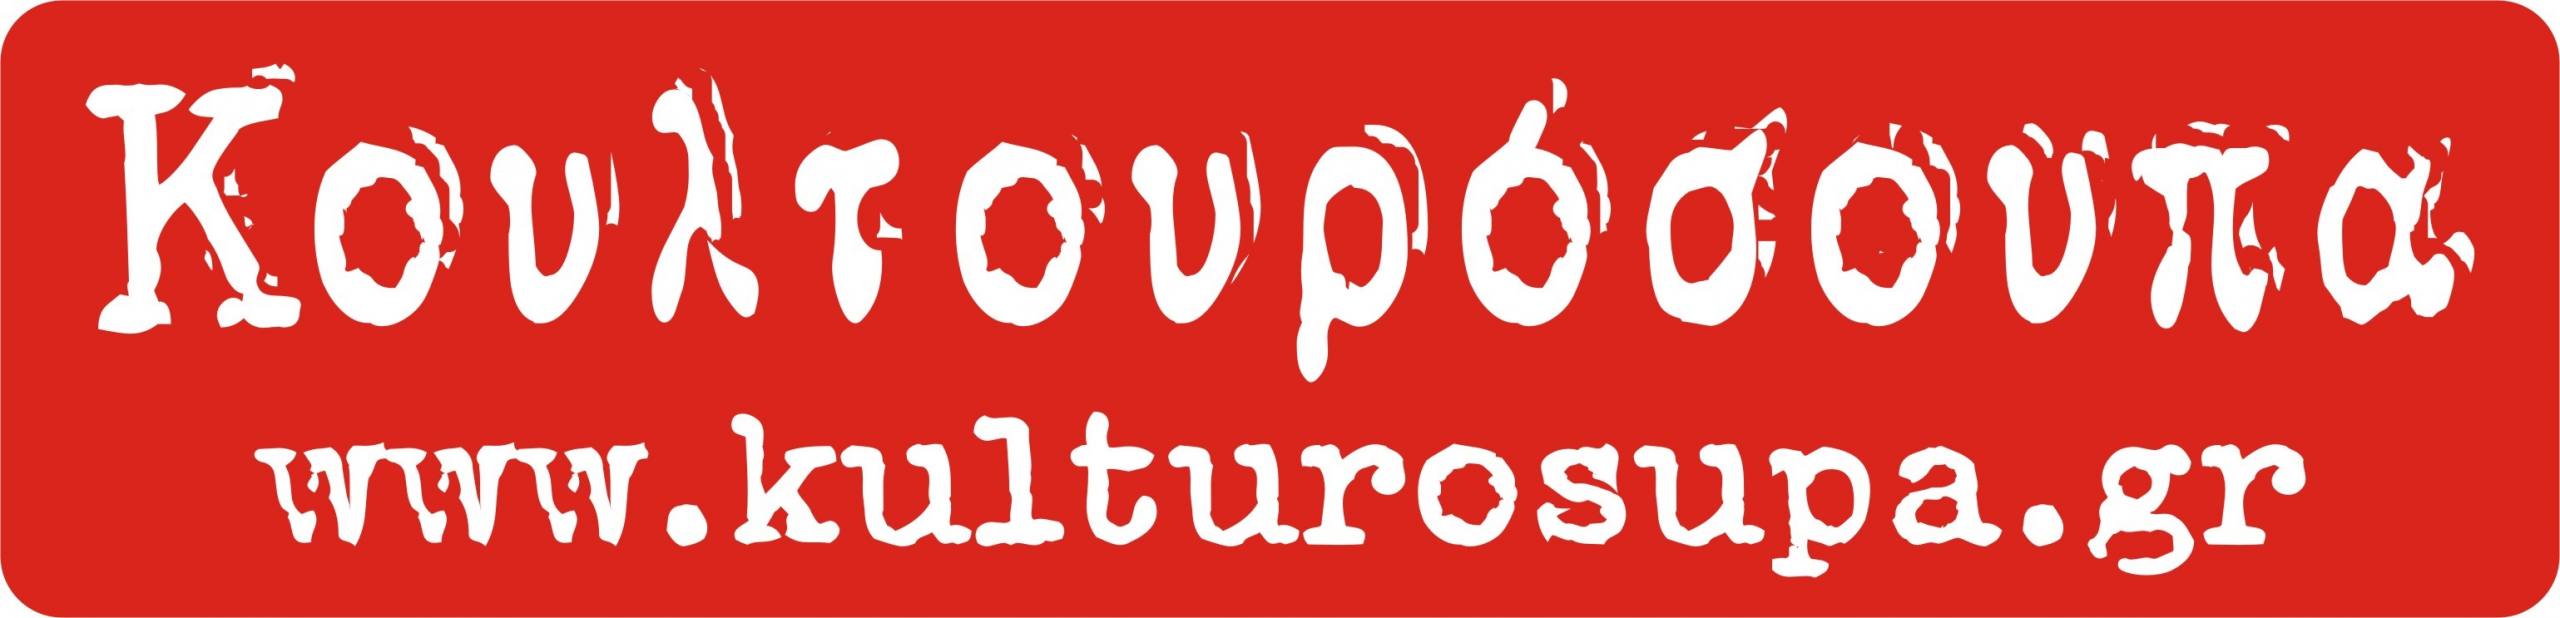 Kulturosupa-Logo-gia-xorigous-red1